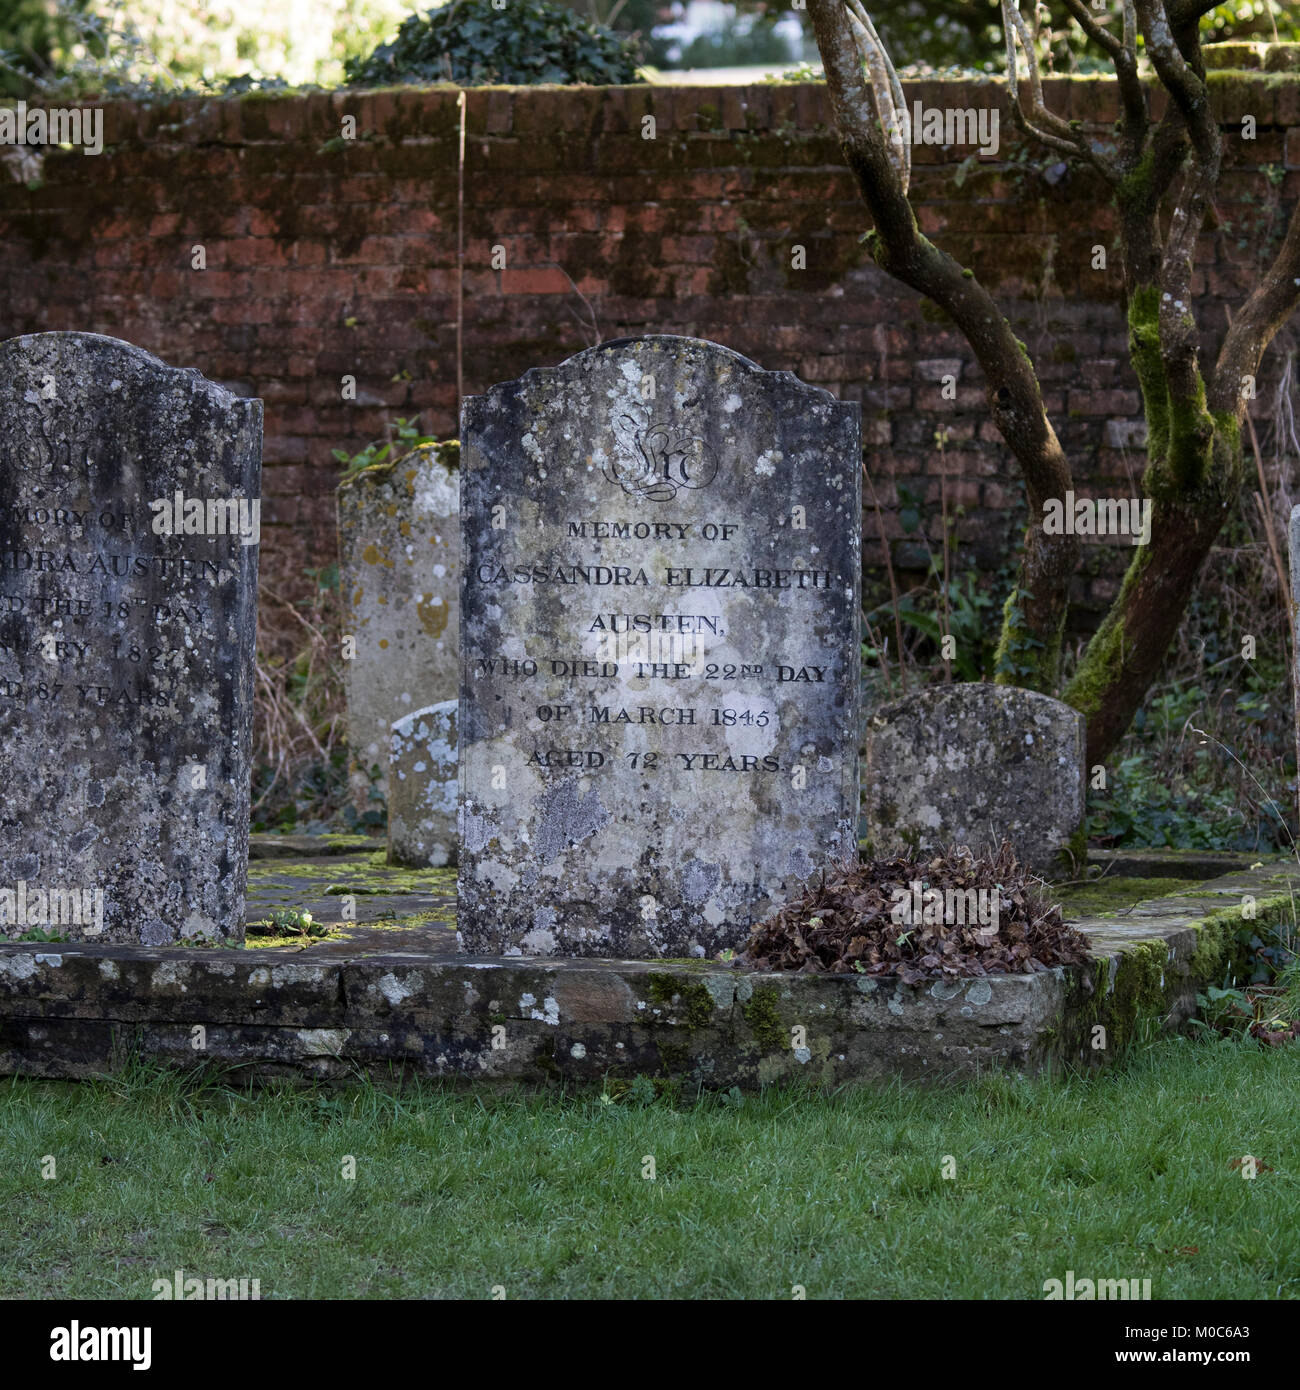 Die Gräber von Cassandra Elizabeth Austen (ältere Schwester von Jane Austen) und Cassandra Austen (geborene Leigh) Mutter von Jane Austen in Chawton Kirchhof, H Stockfoto